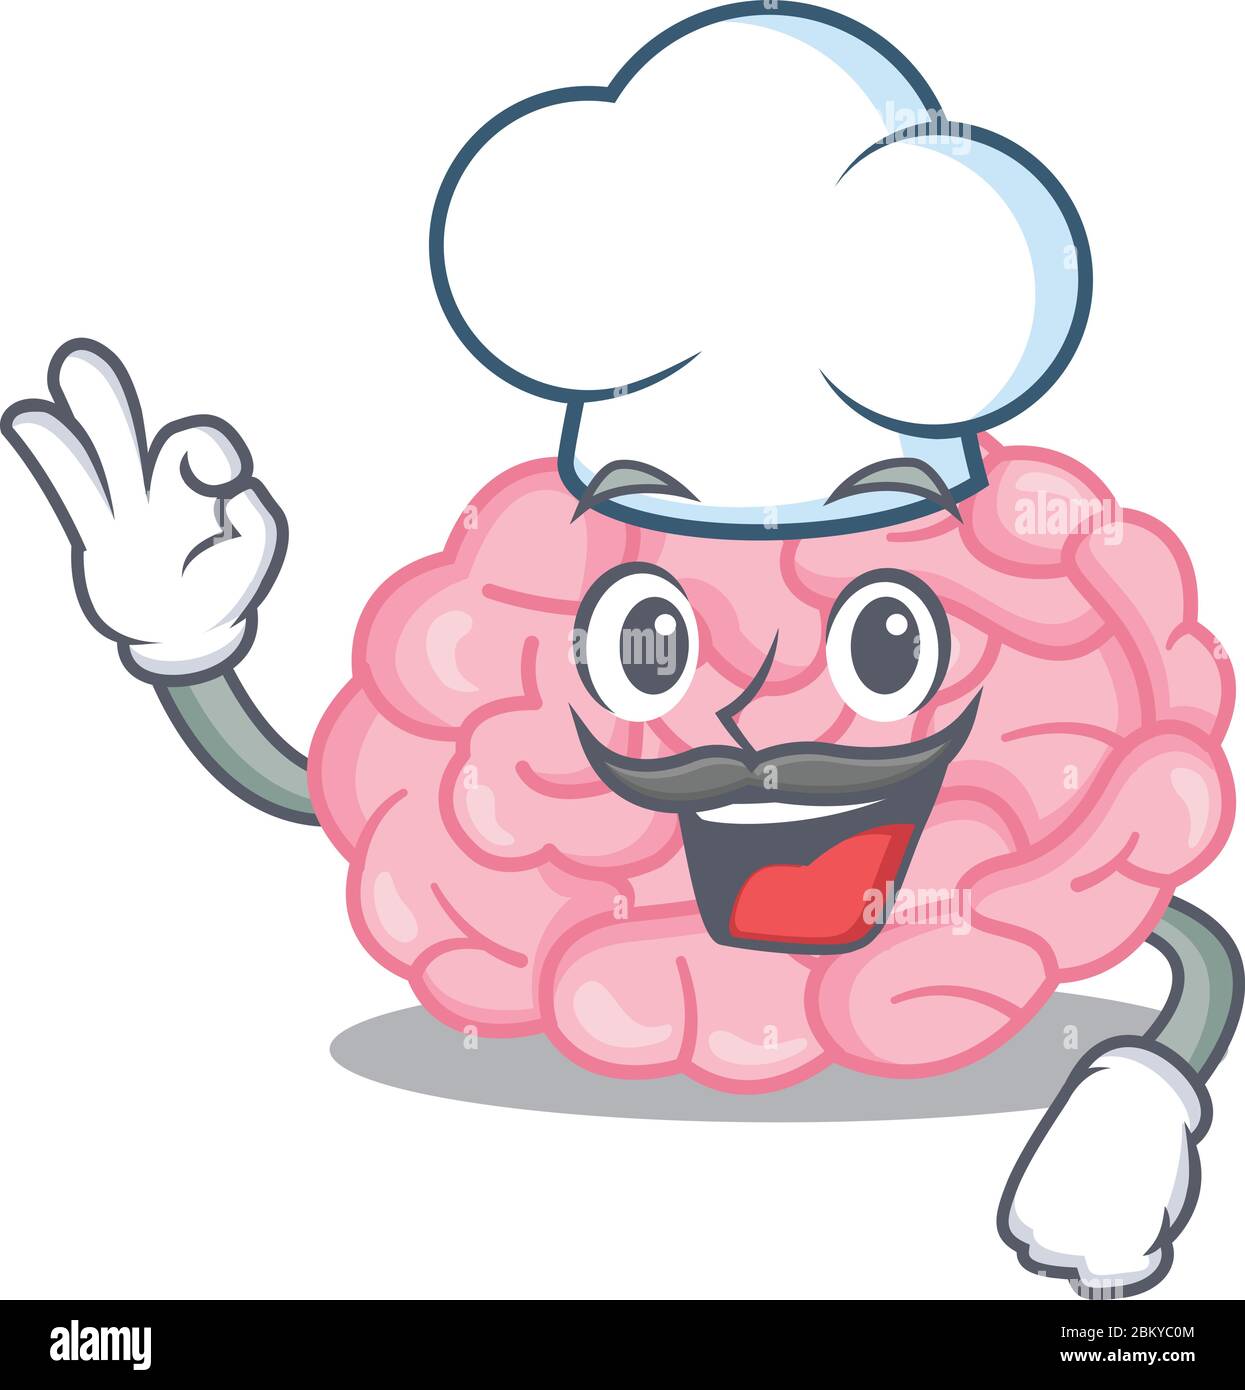 Stile di disegno del fumetto del cervello umano dello chef che indossa un  cappello bianco Immagine e Vettoriale - Alamy